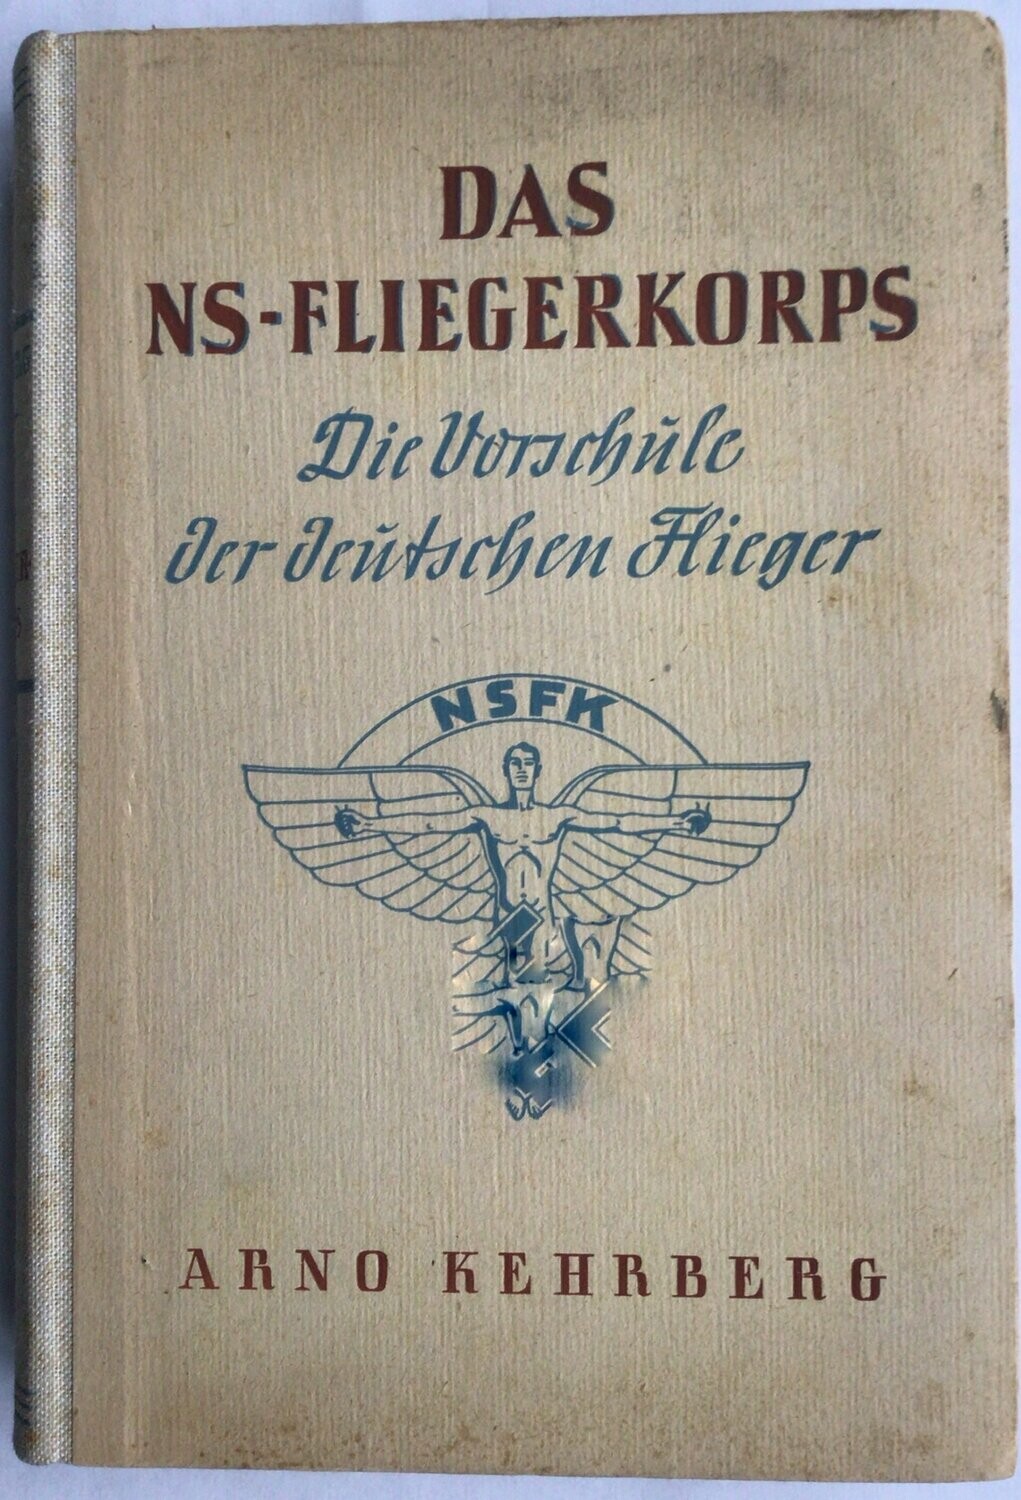 Das NS-Fliegerkorps - Die Vorschule der deutschen Flieger - Halbleinenausgabe aus dem Jahr 1942.